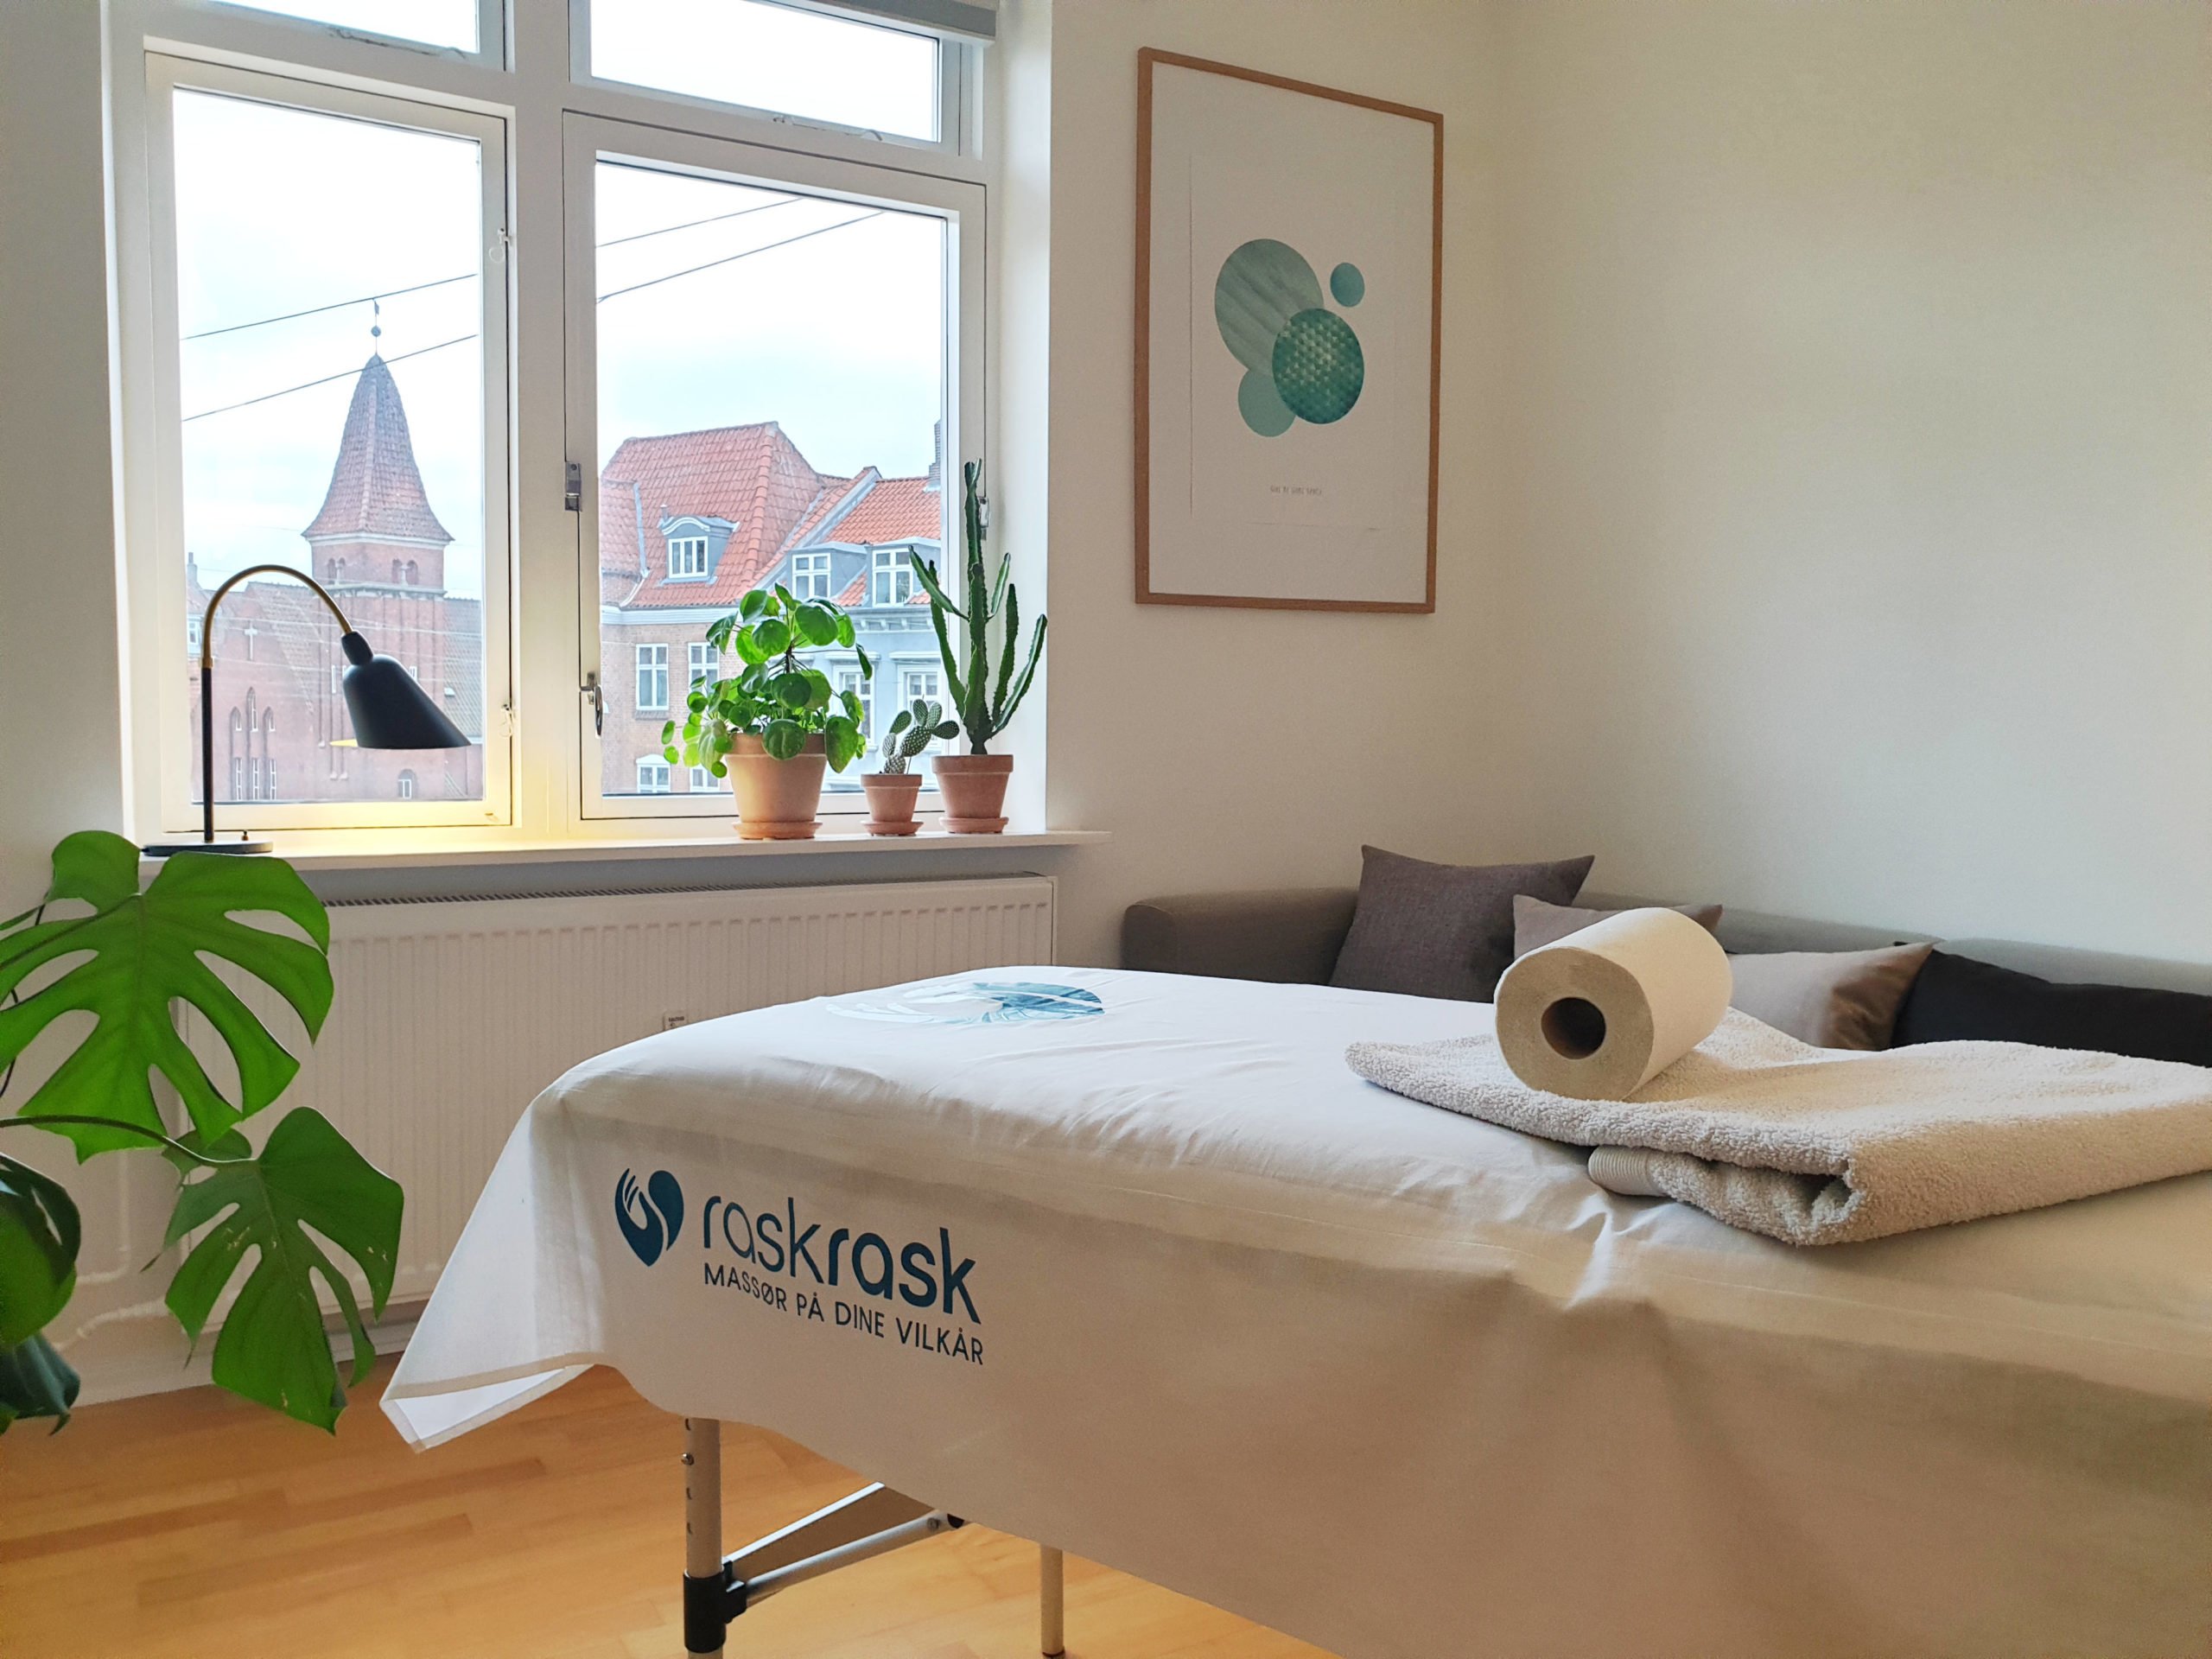 Massør har opstillet briks i sin patients hjem i Aarhus